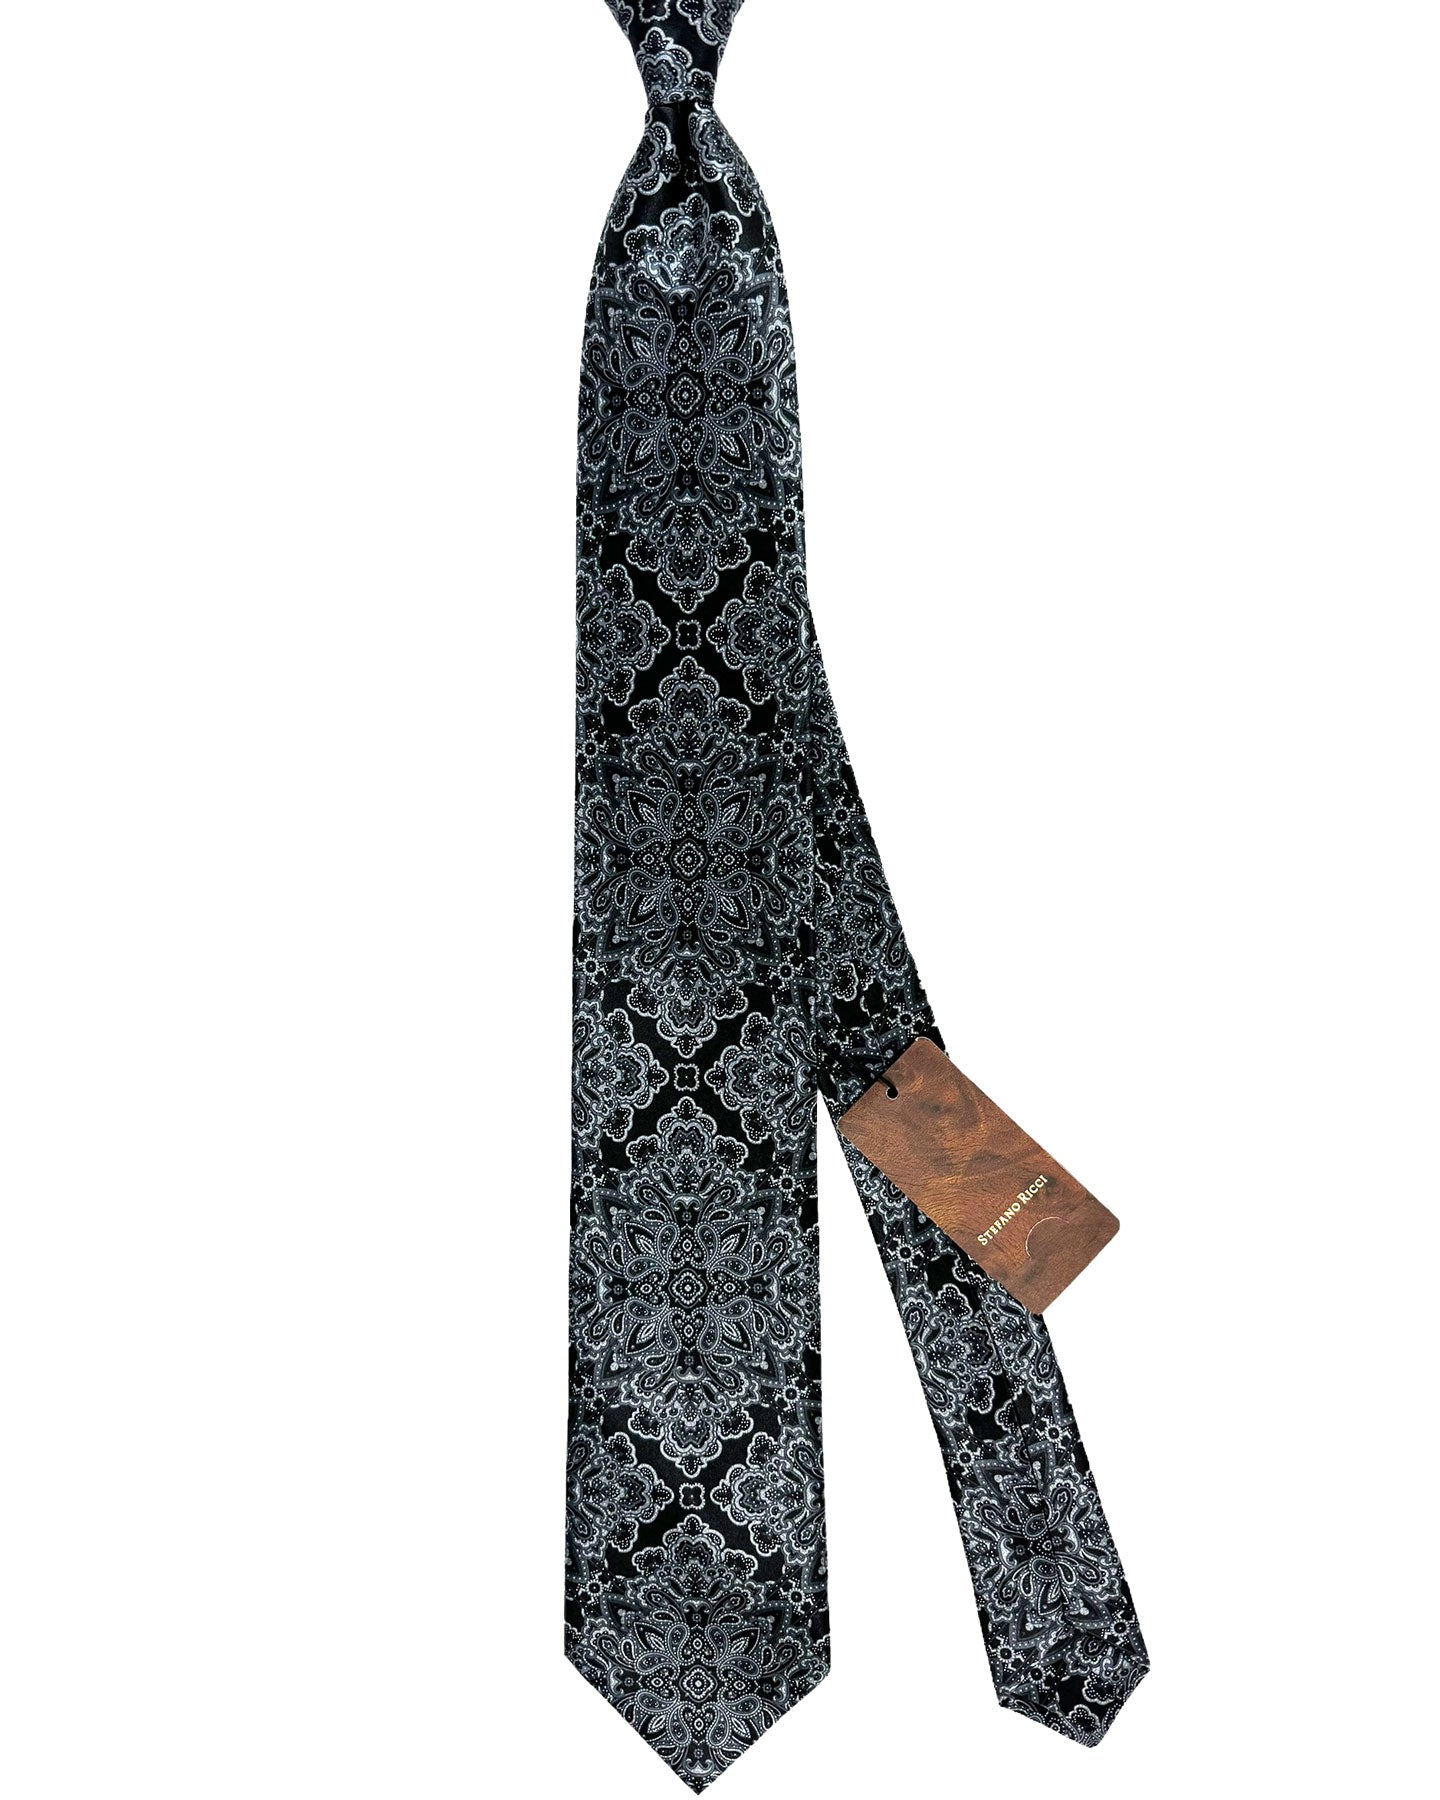 Stefano Ricci Silk Tie Black Gray Ornamental Design